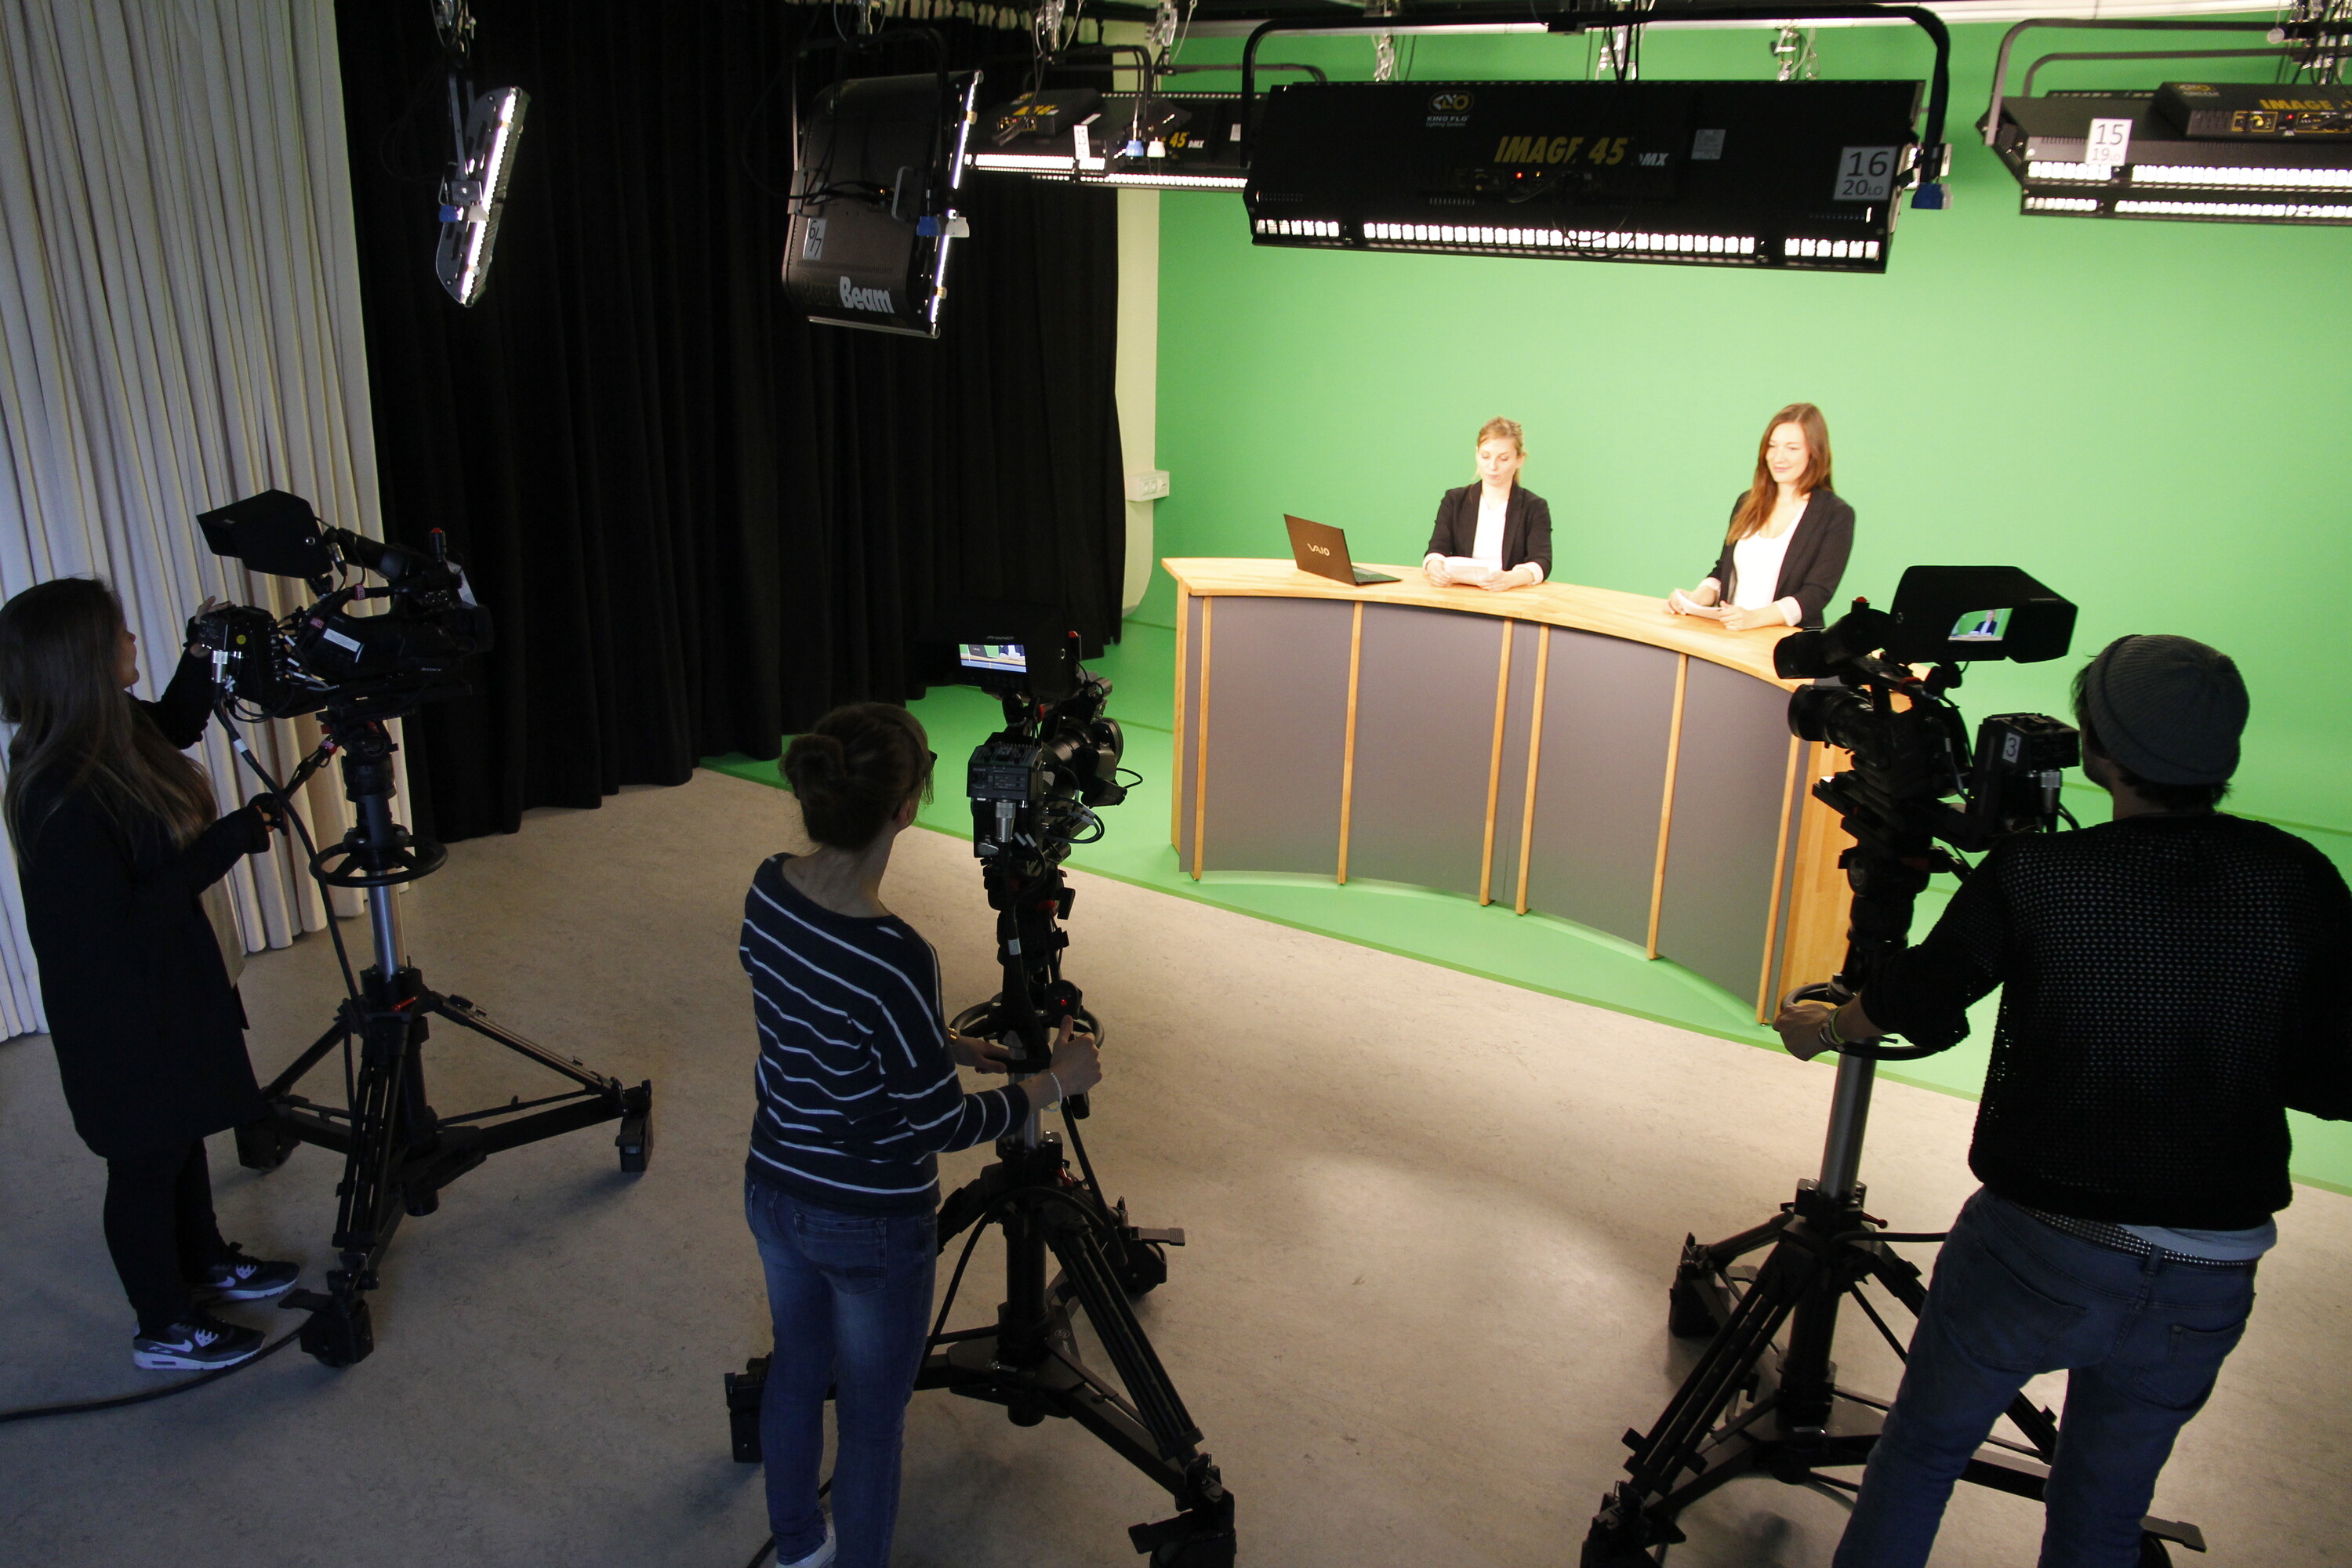 Überblick in das Fernsehstudio, in dem die Studierenden eine Sendung produzieren